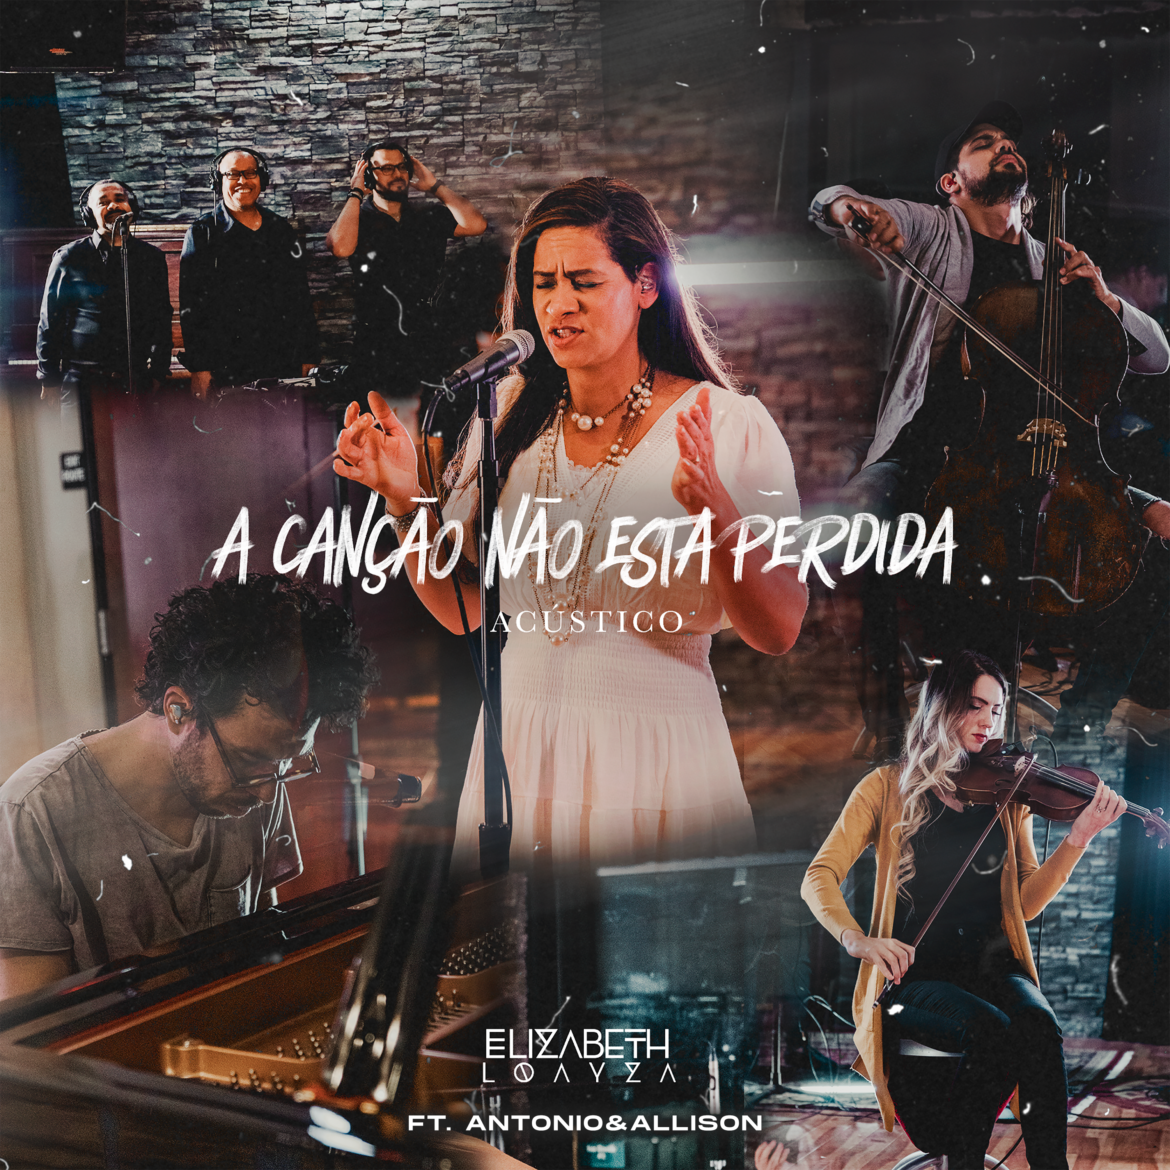 Radicada nos Estados Unidos, a brasileira Elizabeth Loayza lança “A Canção Não Está Perdida” feat. Allison & Antonio Marin